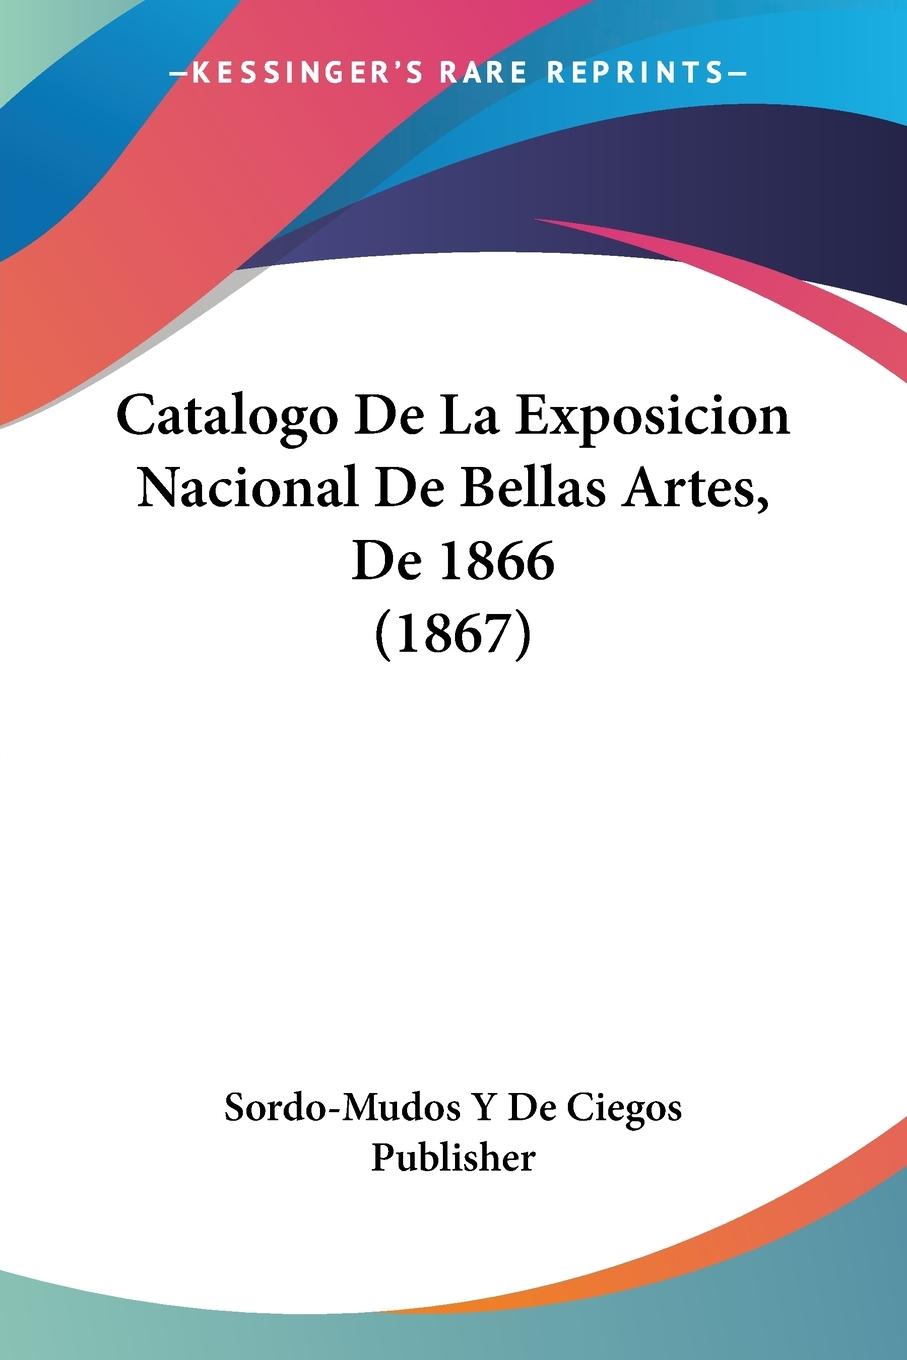 Catalogo De La Exposicion Nacional De Bellas Artes, De 1866 (1867) - Sordo-Mudos Y de Ciegos Publisher